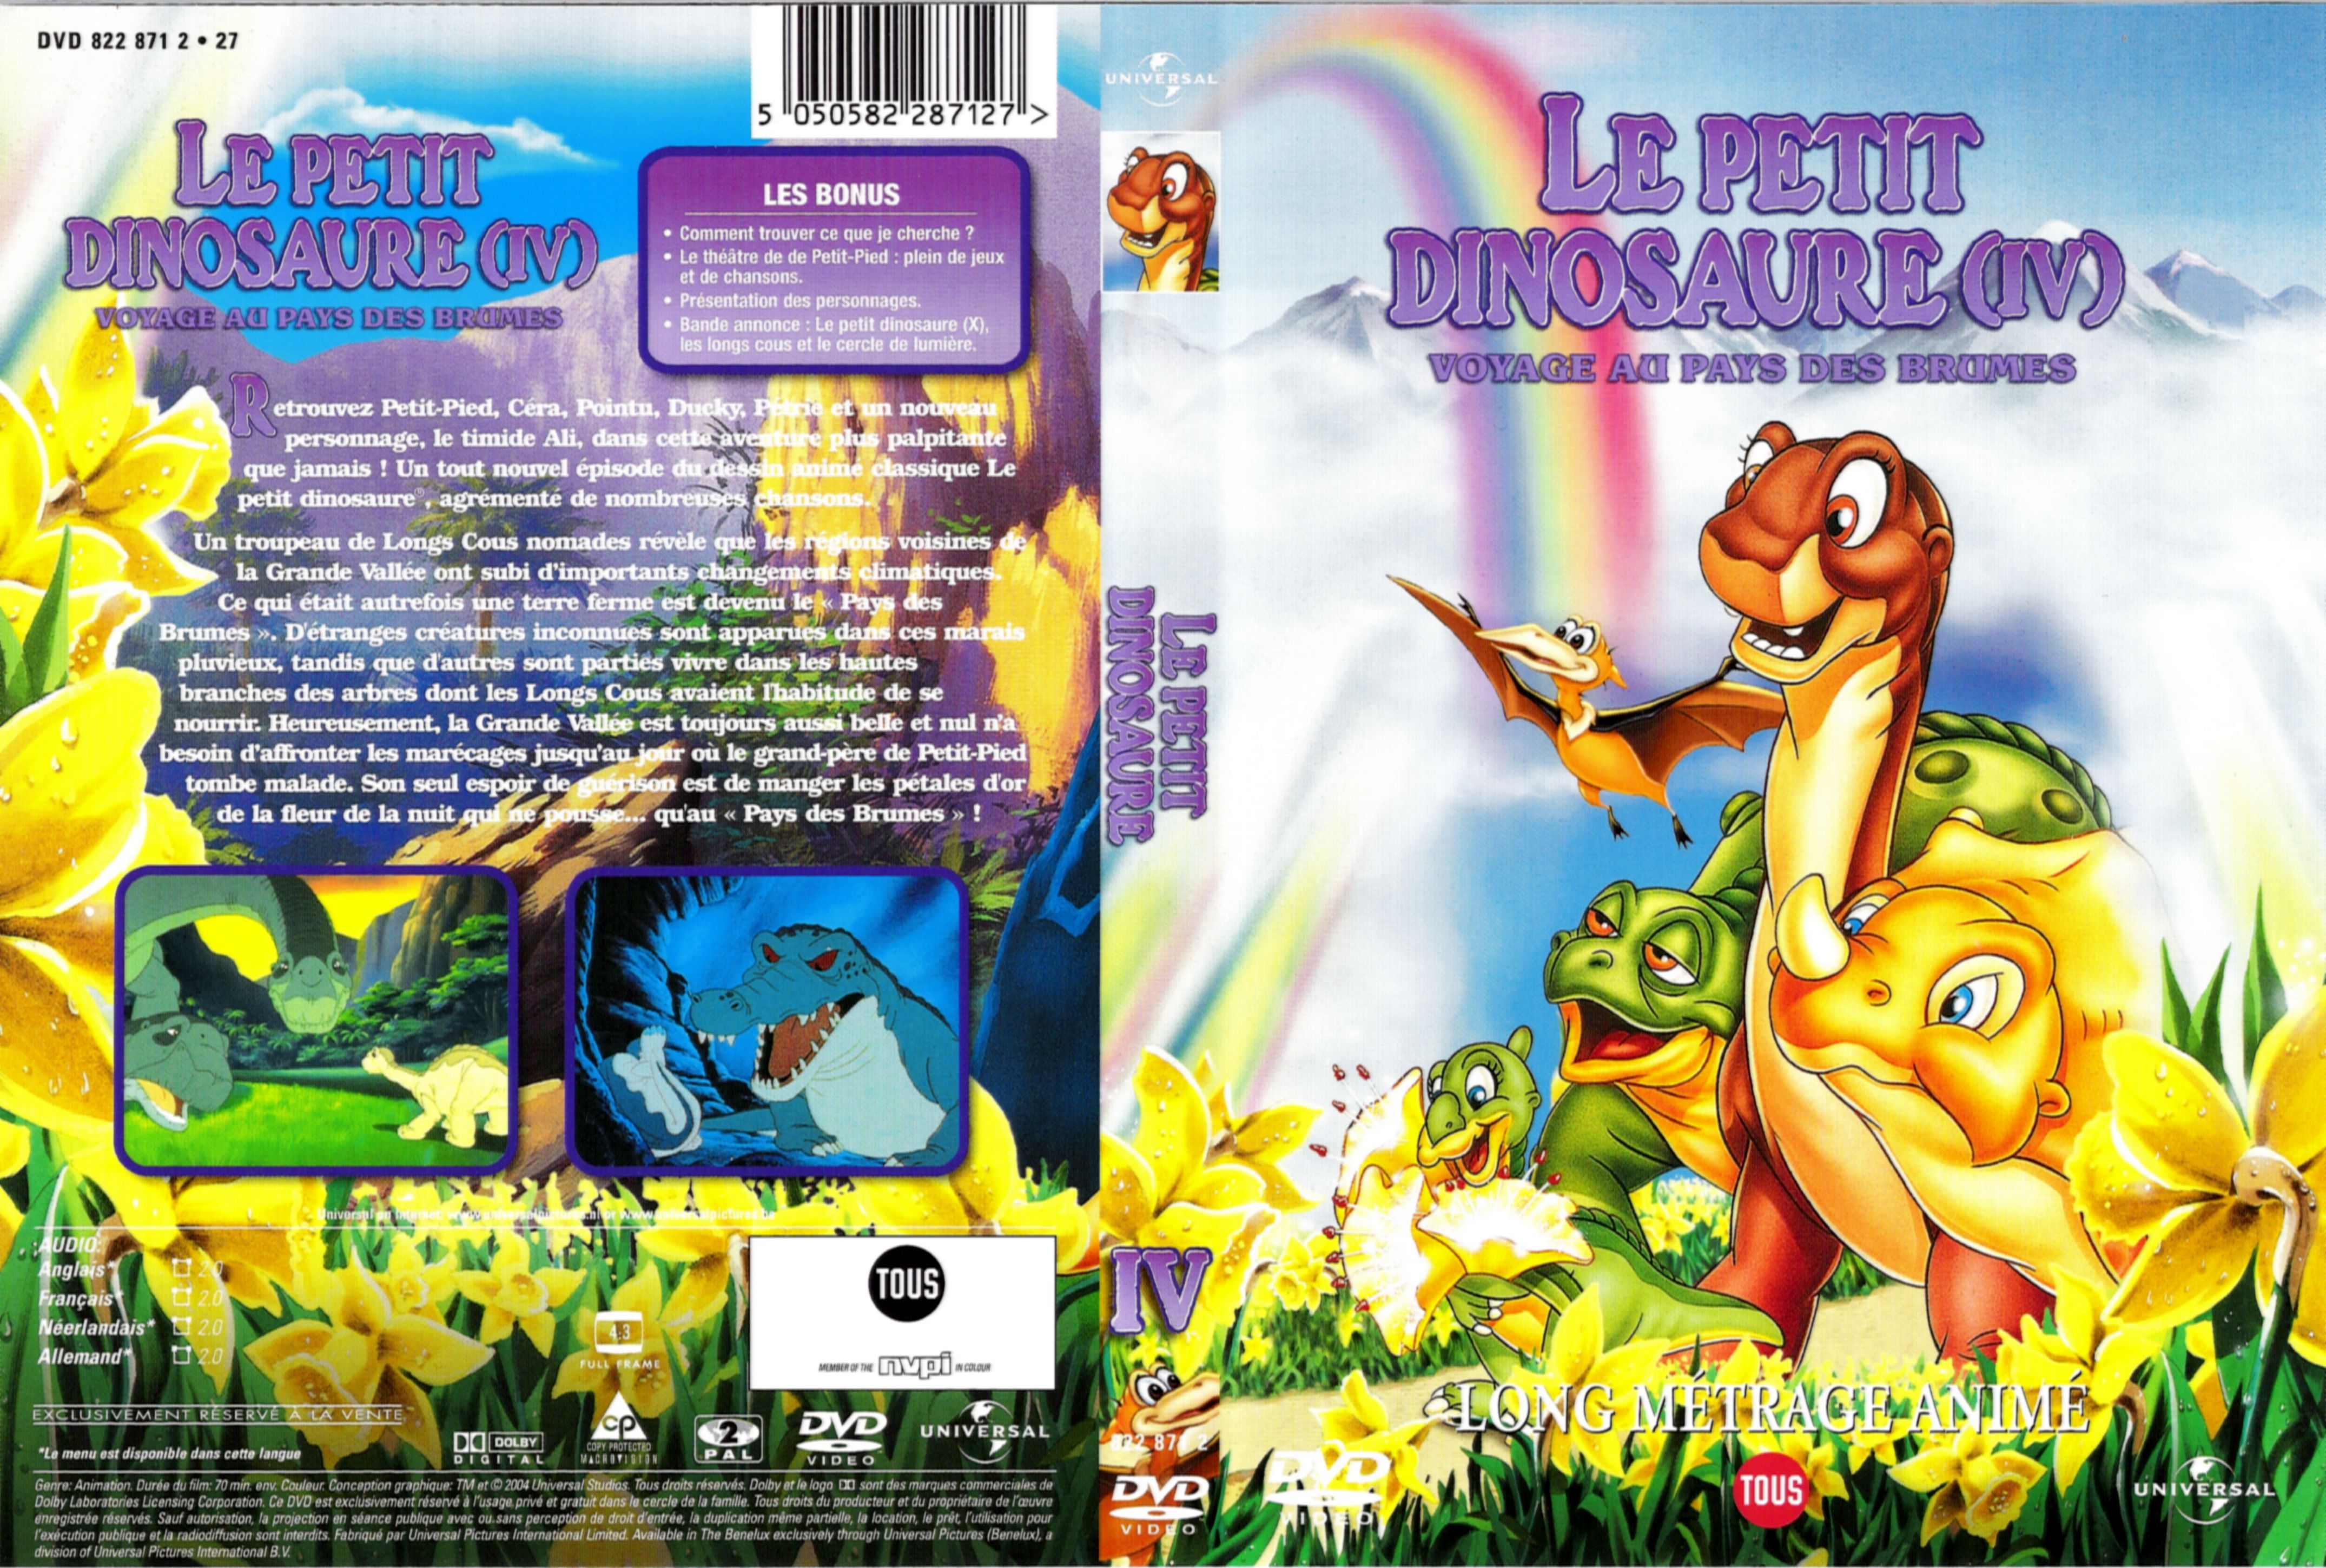 Jaquette DVD Le petit dinosaure vol 4 - voyage au pays des brumes